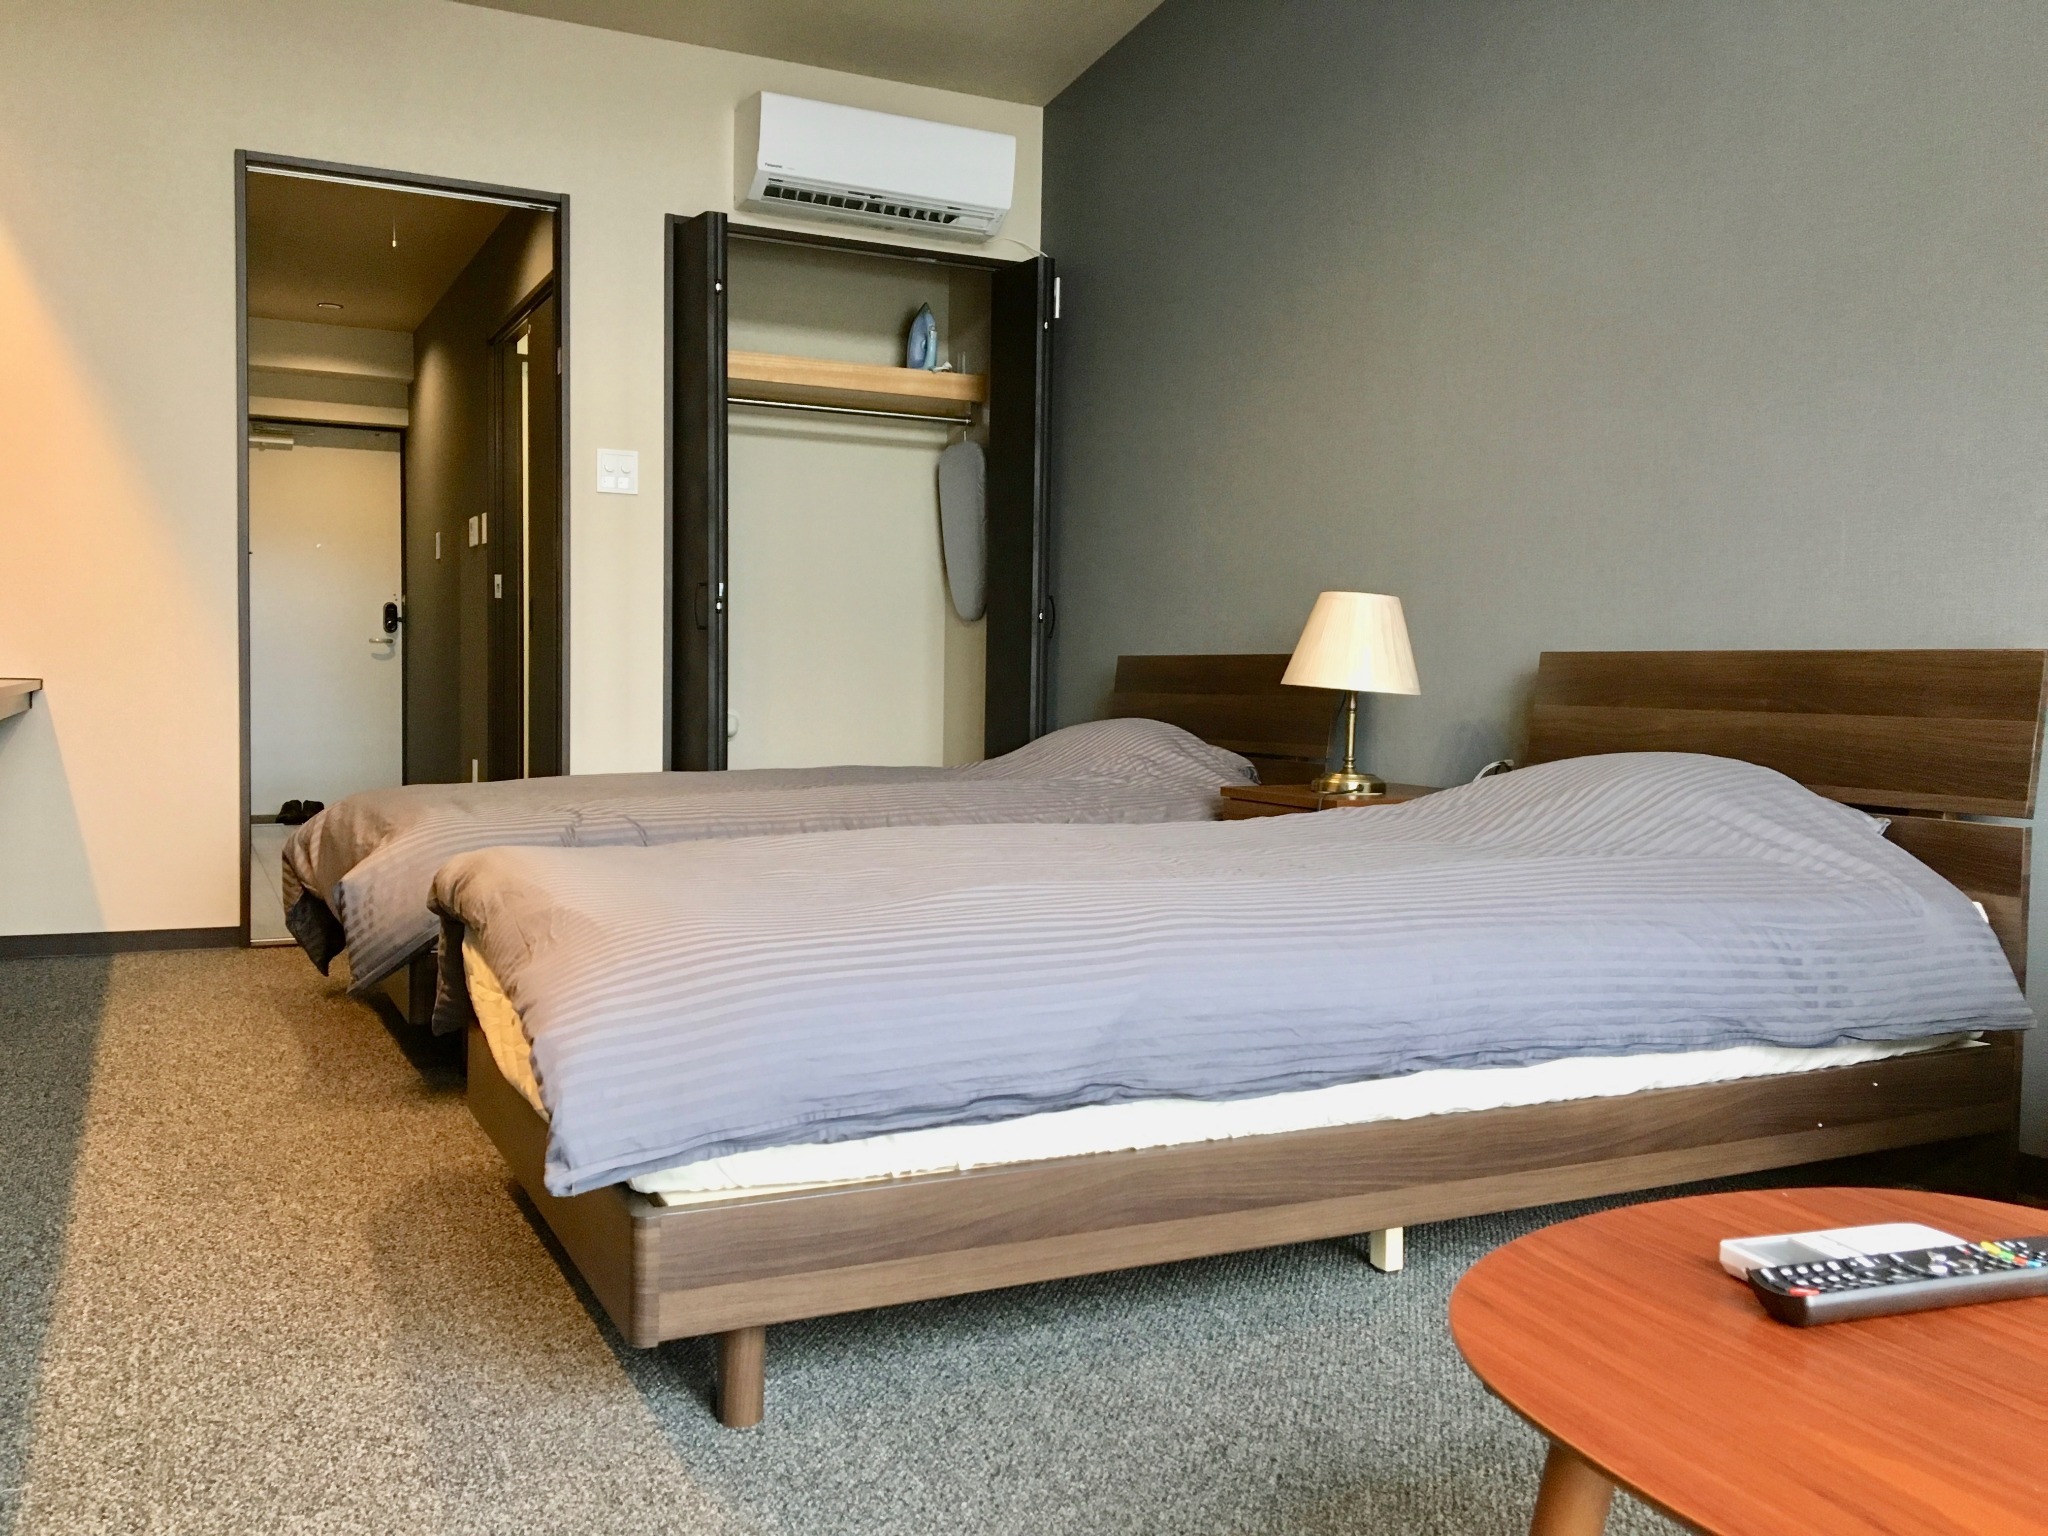 #203:ホテル仕様のお部屋でリラックスできる空間